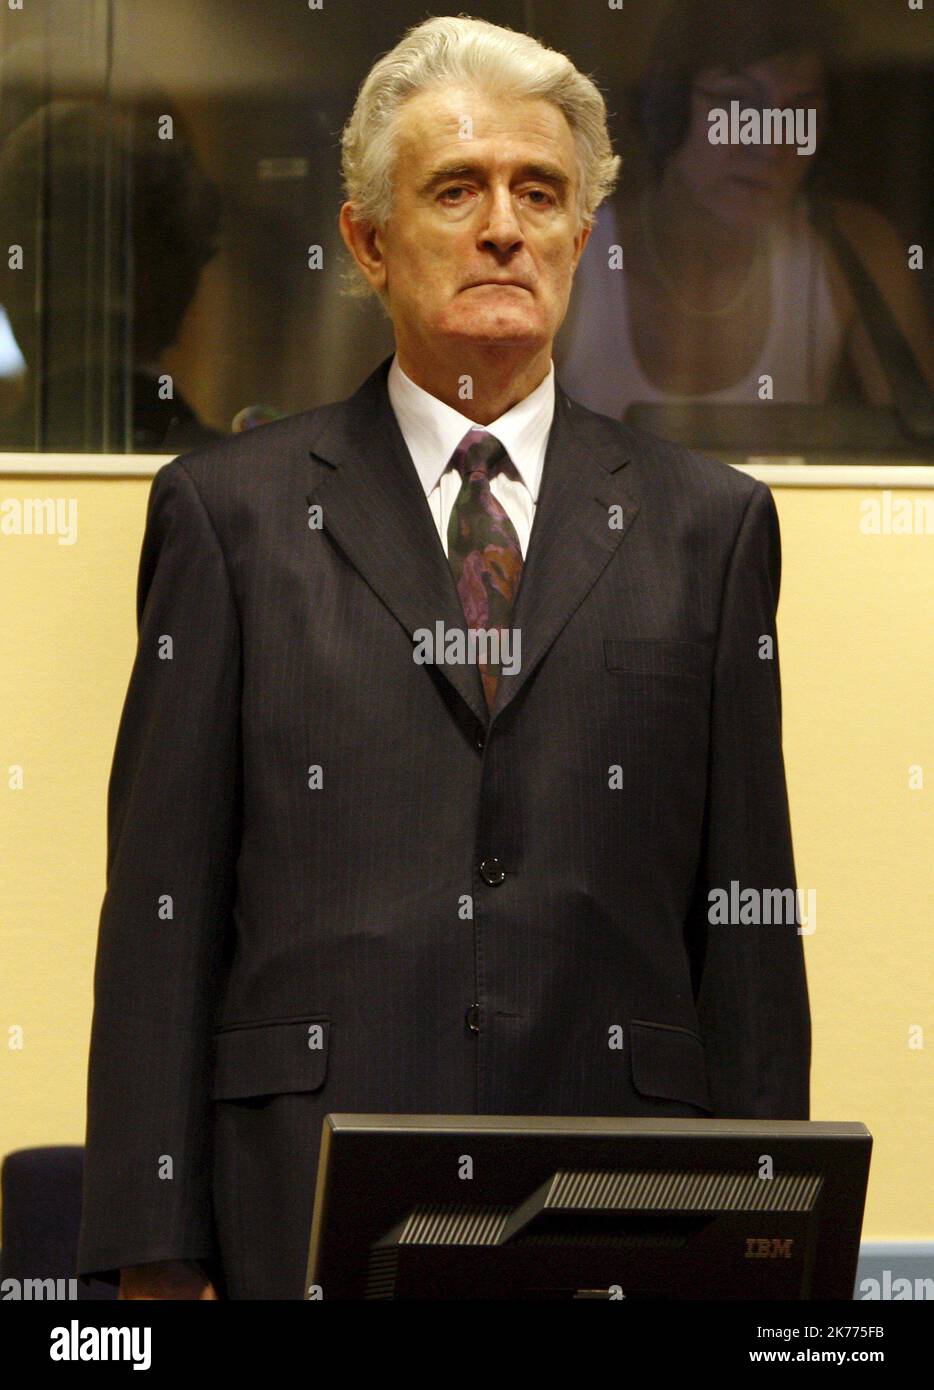 Der ehemalige bosnisch-serbische Führer Radovan Karadzic tritt zu Beginn seines ersten Auftritts in Den Haag, Niederlande, am 31. Juli 2008 in den Gerichtssaal des Internationalen Strafgerichtshofs für das ehemalige Jugoslawien ein. Karadzic steht zum ersten Mal einem UN-Kriegsverbrecher gegenüber, der wegen Völkermordes für seine Handlungen im Bosnien-Krieg von 1992-95 angeklagt wurde. Stockfoto